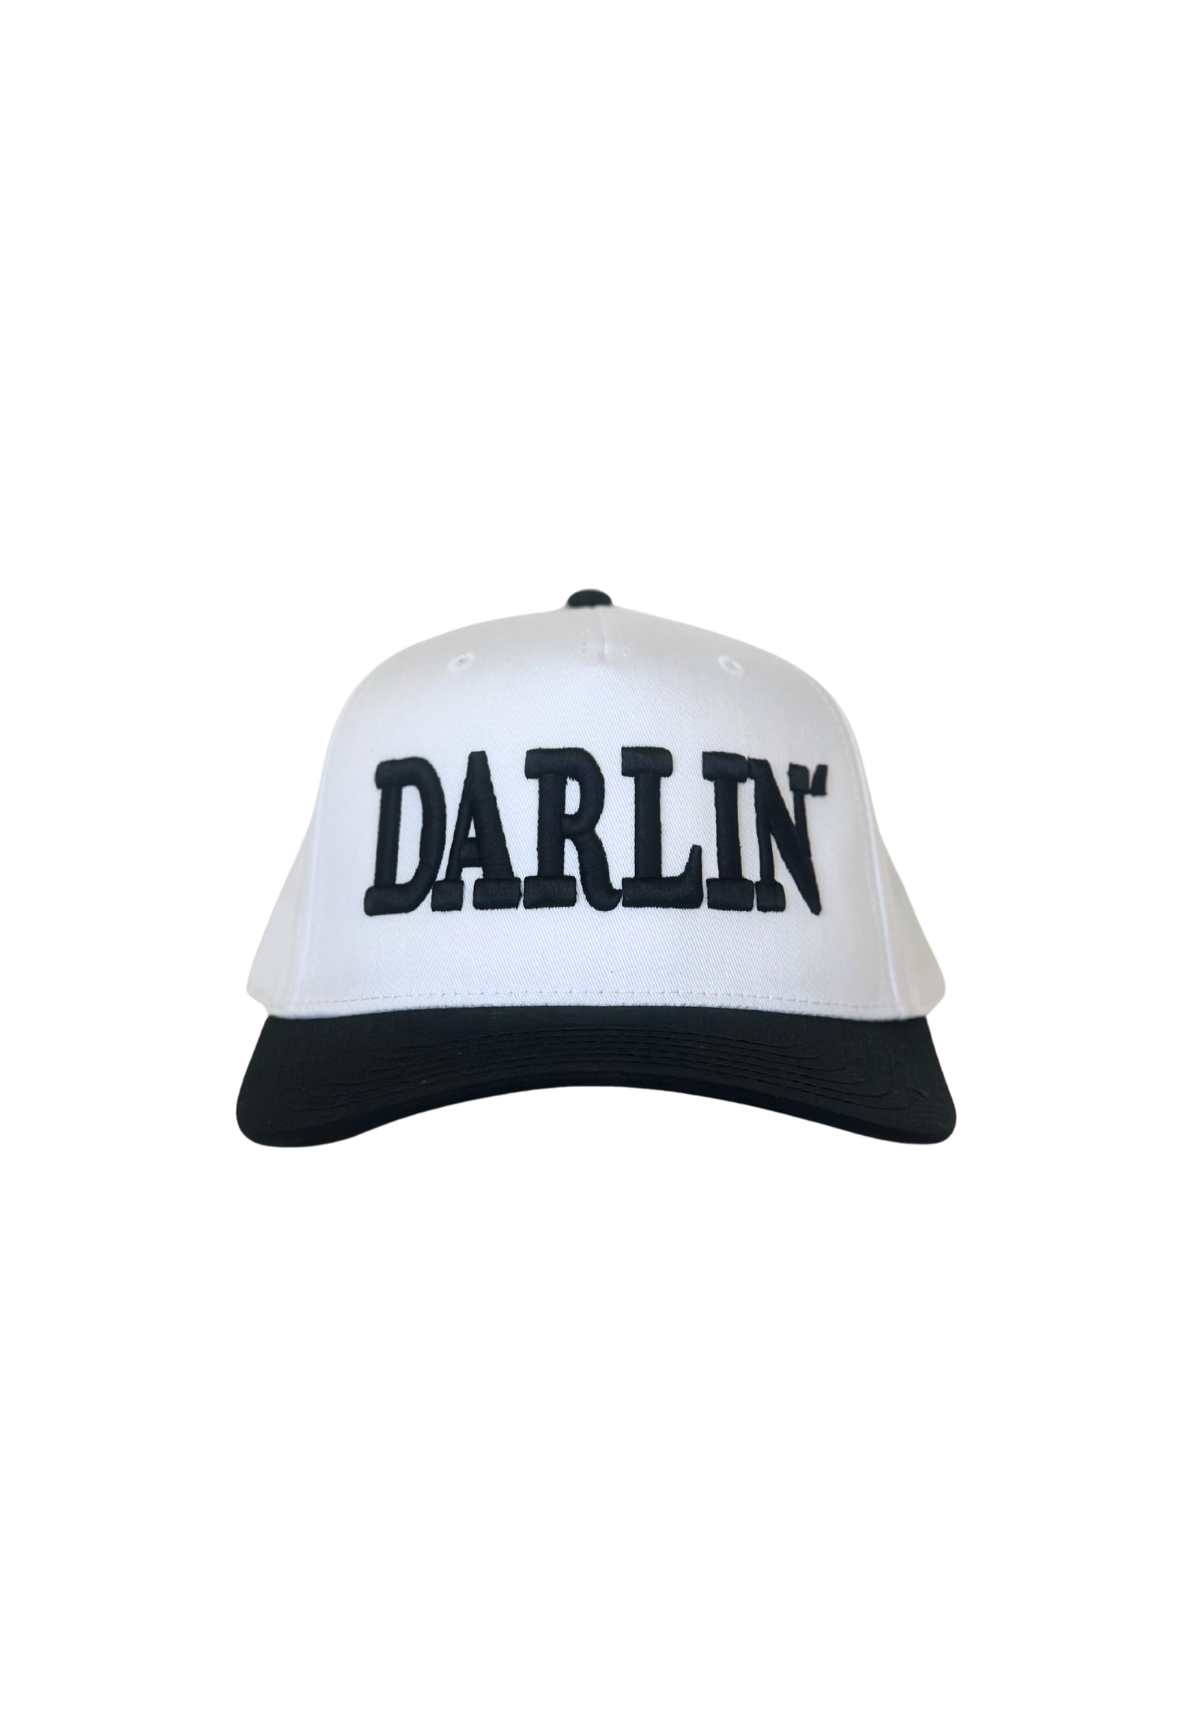 DARLIN' Snapback White/Black